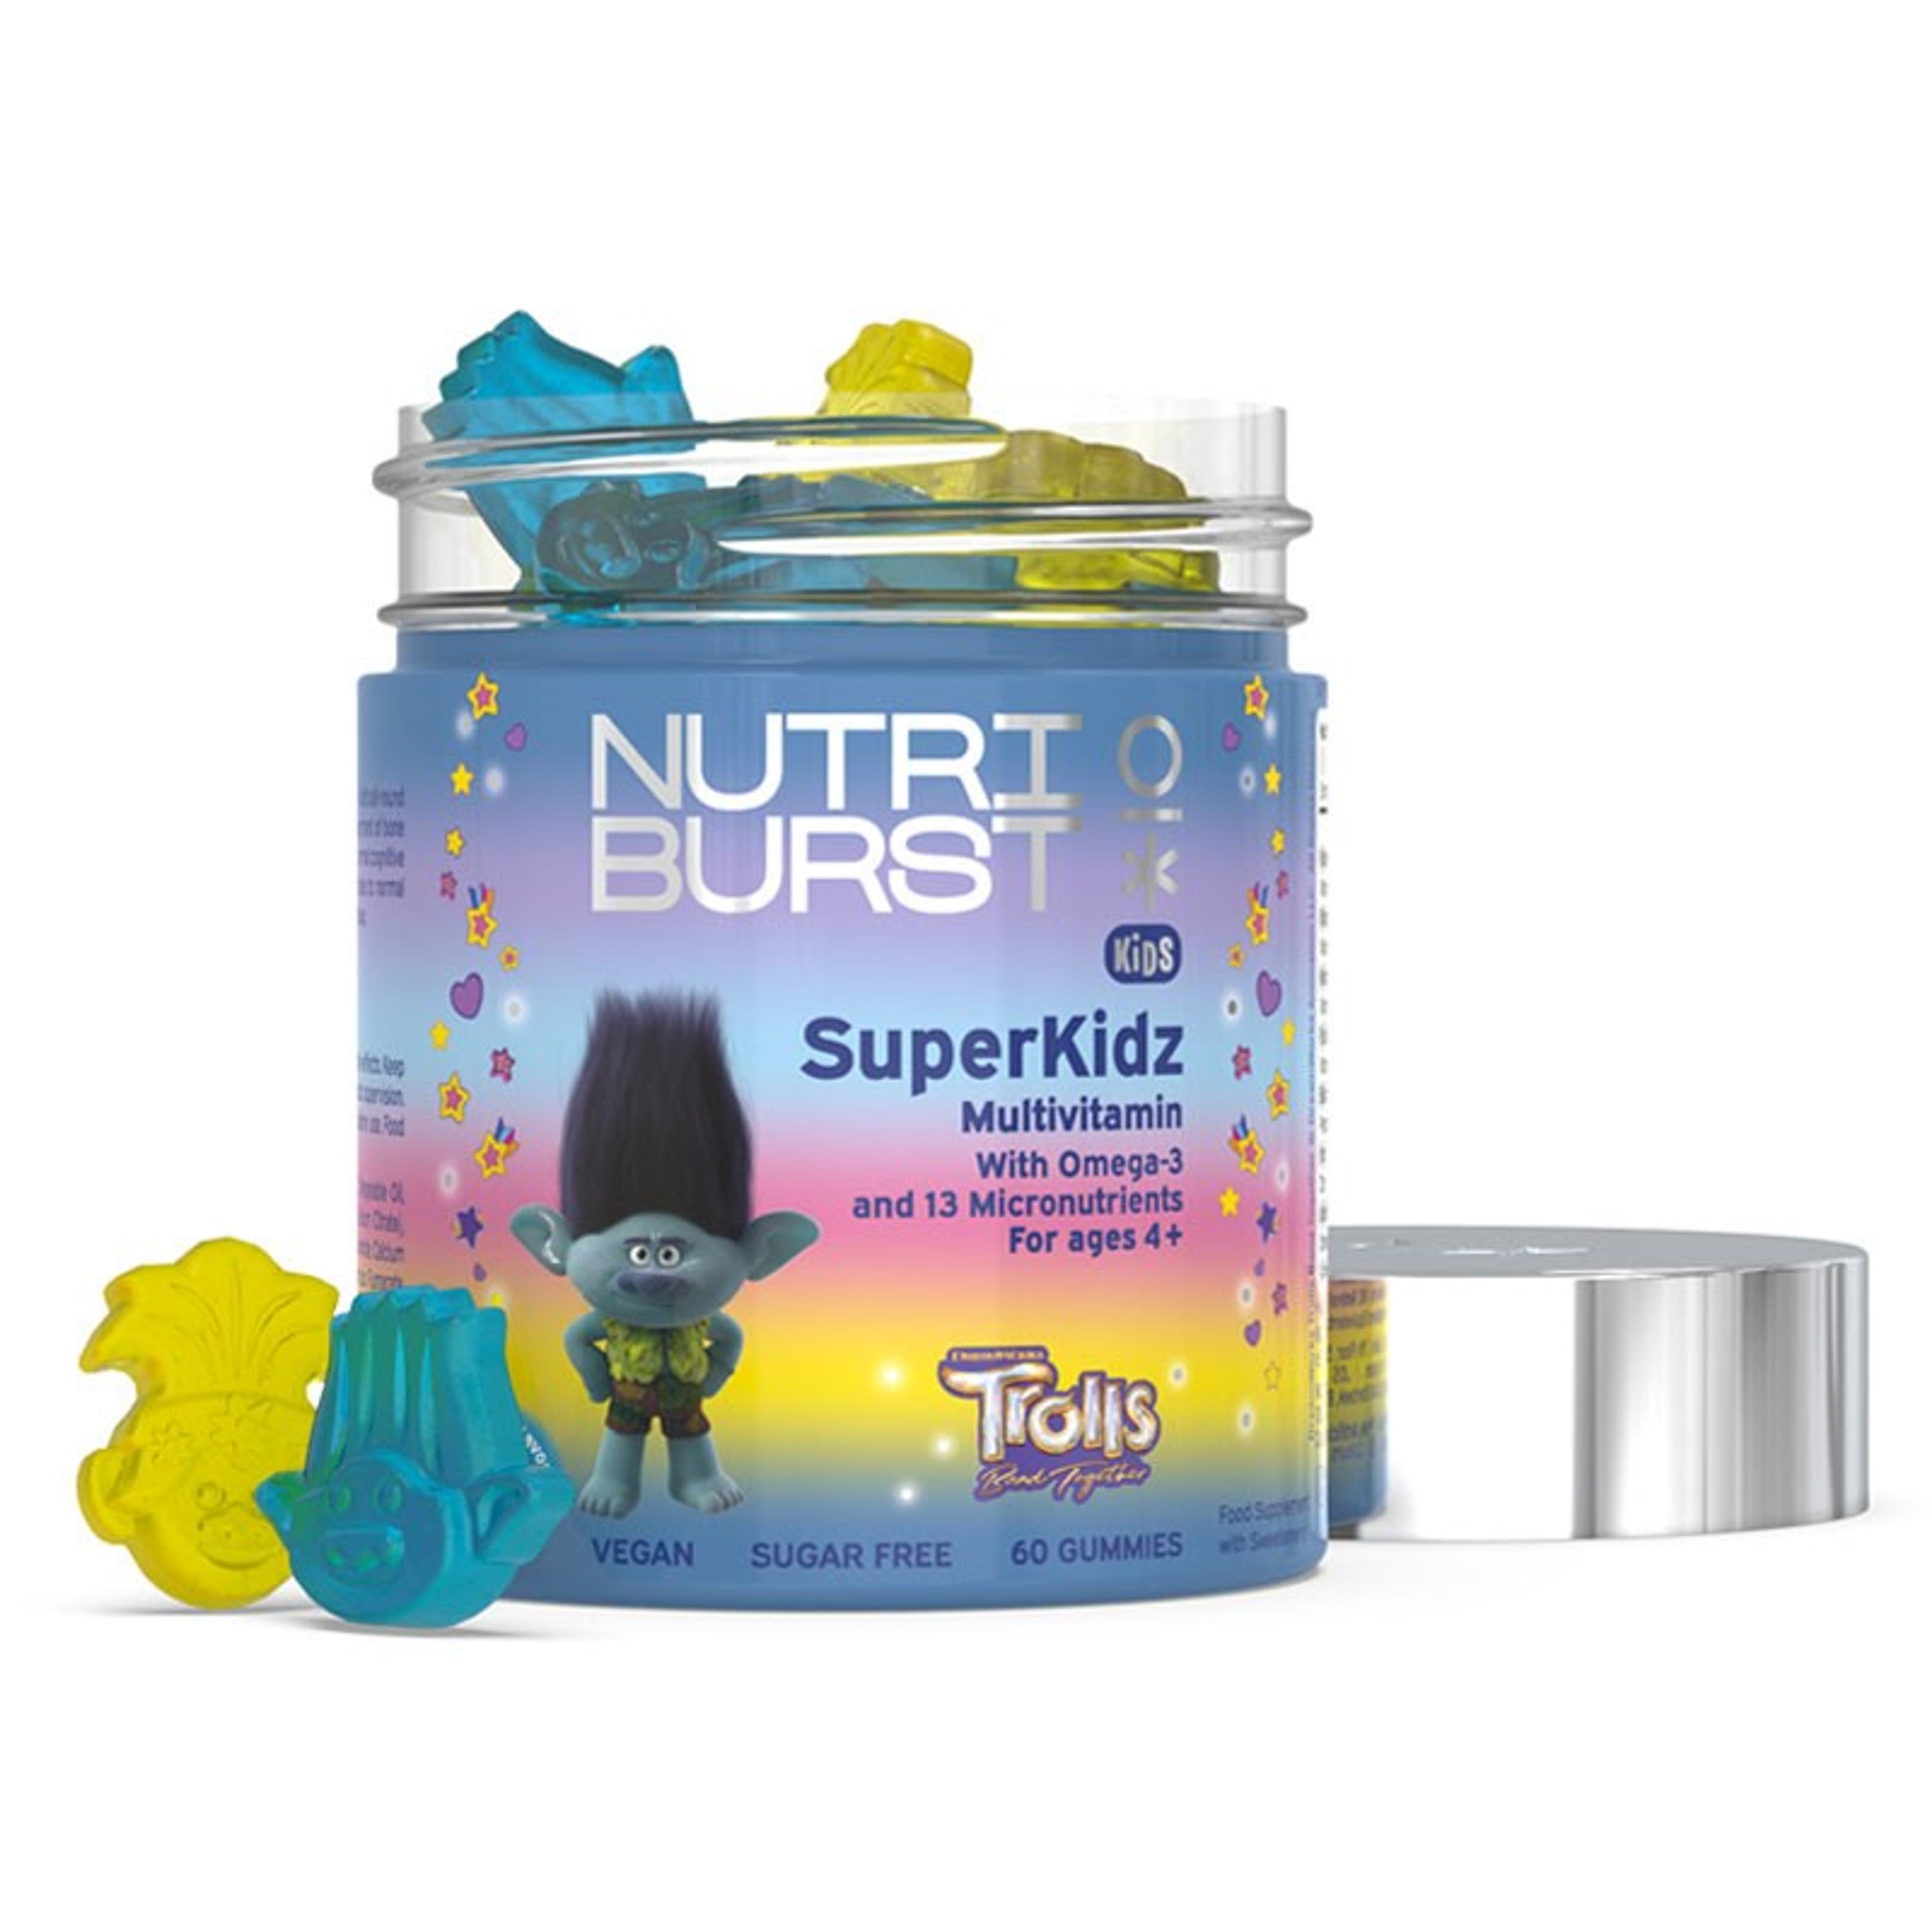 Nutriburst Trolls SuperKidz Multivitamin gumivitamin  gyermekek számára - 60 db-2